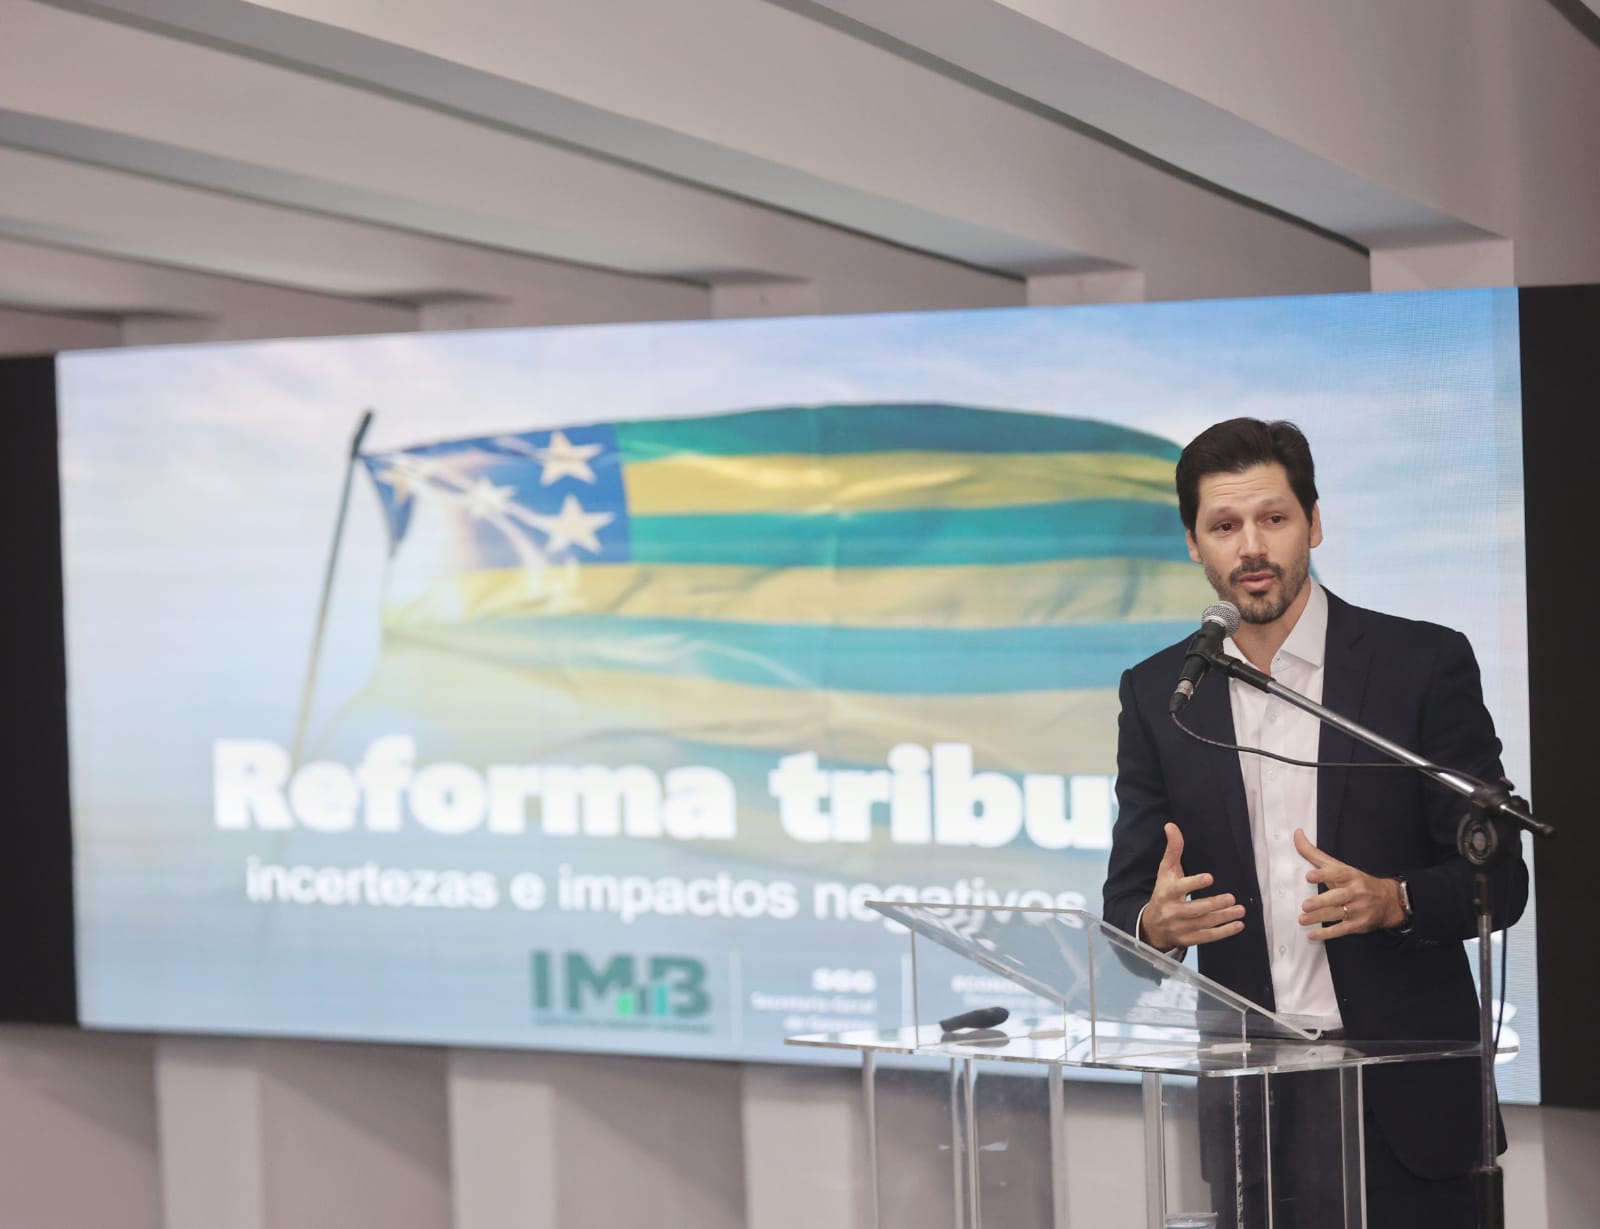 Em reunião com lideranças políticas e empresariais, Daniel Vilela reforça posicionamento do governador Ronaldo Caiado, que é contrário ao atual projeto de Reforma Tributária